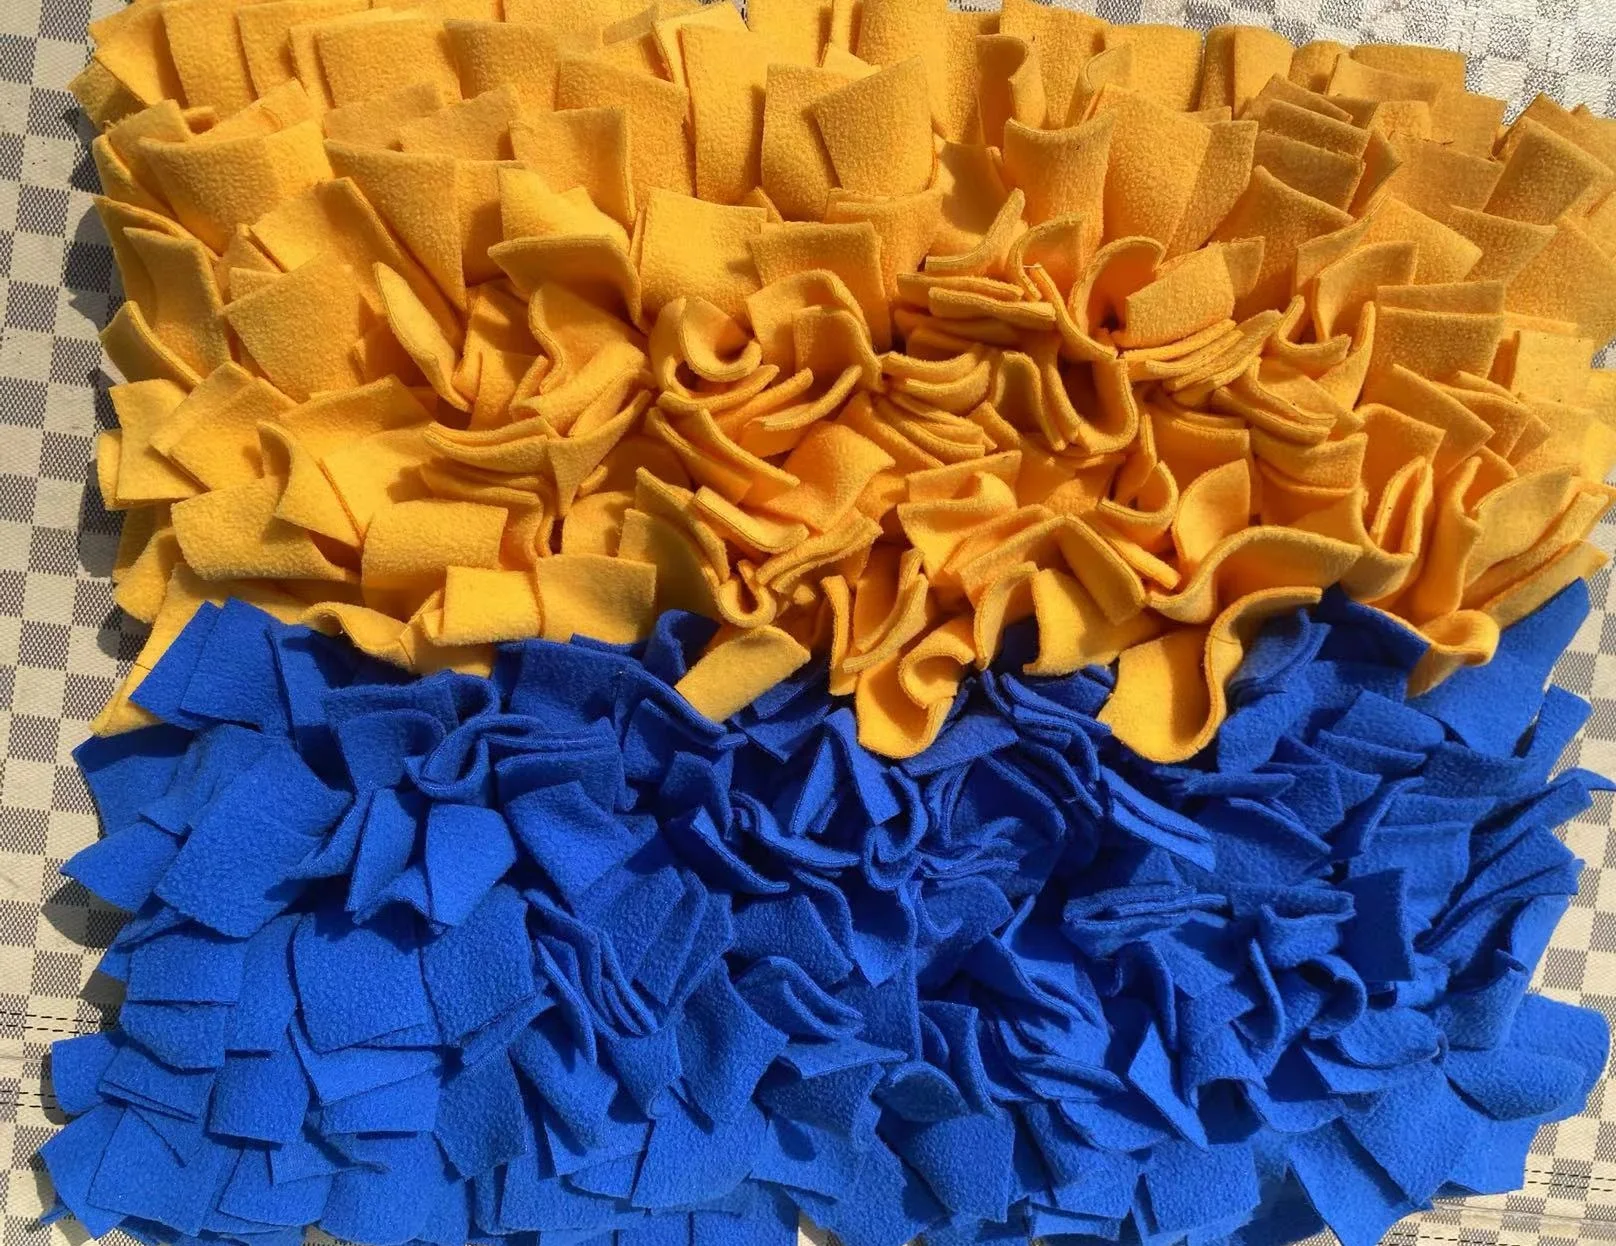 Синий и желтый, размер 45x60 см, сшитый из флиса, коврик для кормления крупных собак, коврик для нюхания собак крупных пород 2